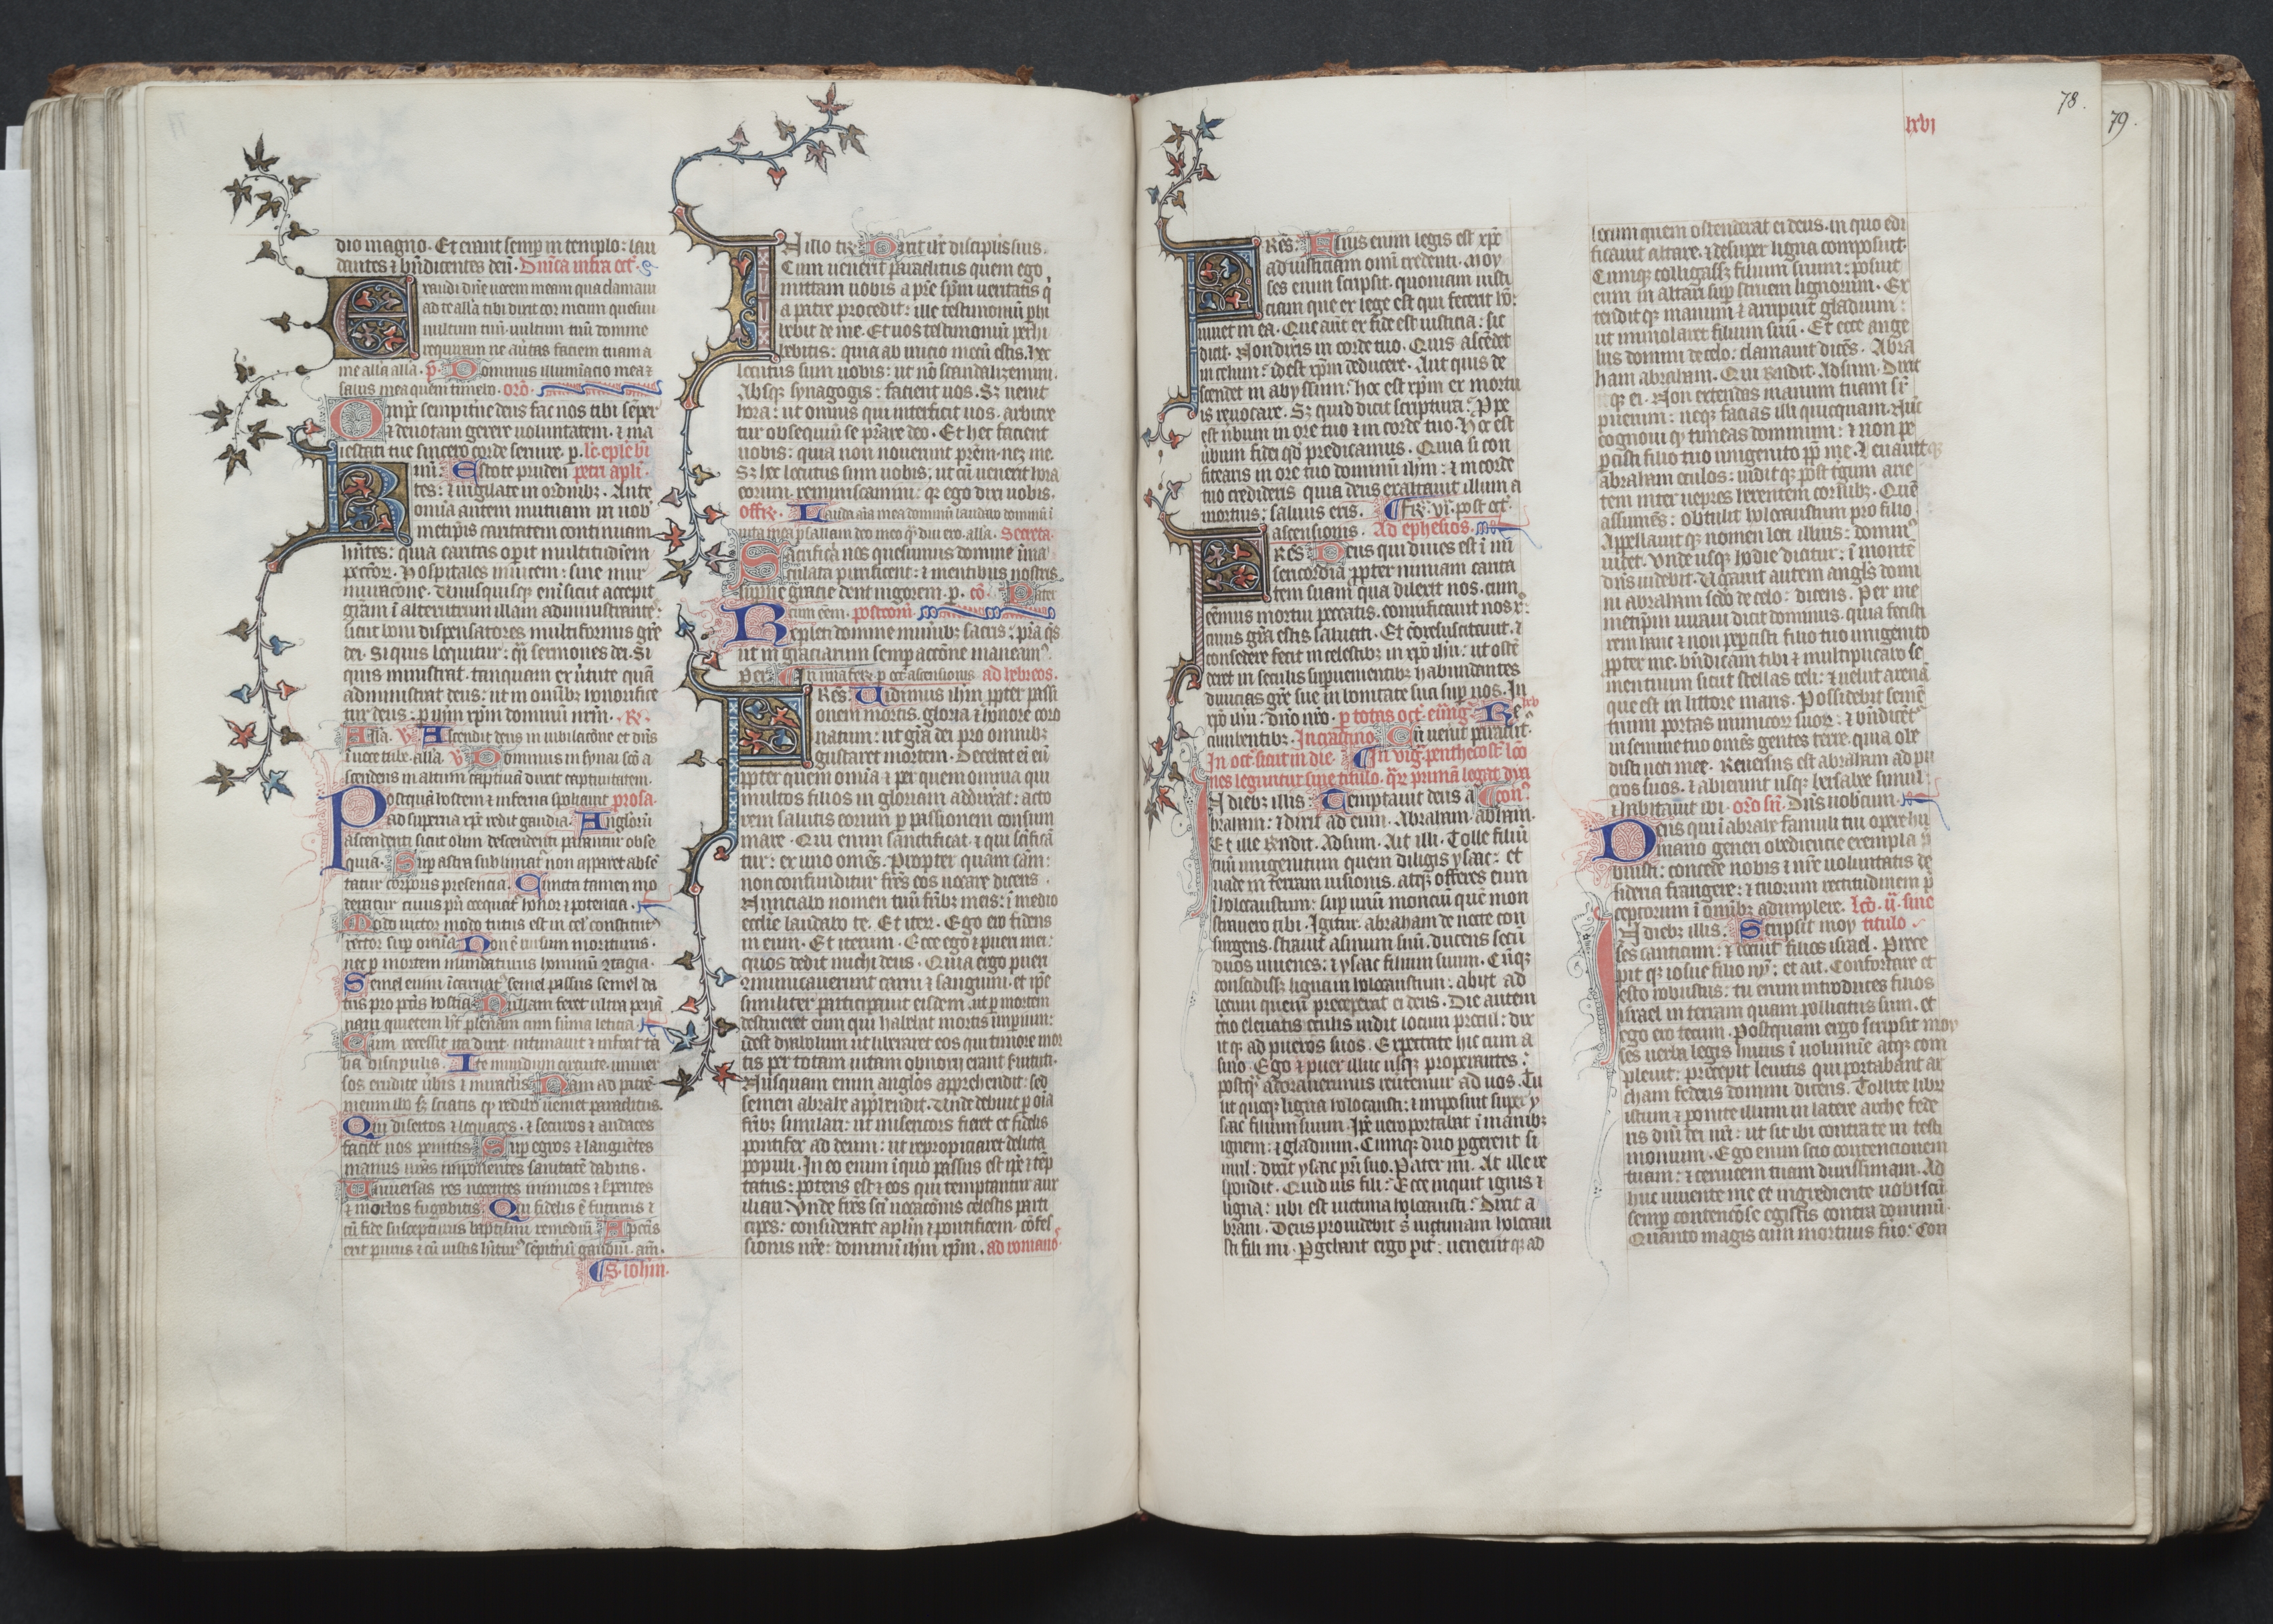 The Gotha Missal:  Fol. 78r, Text